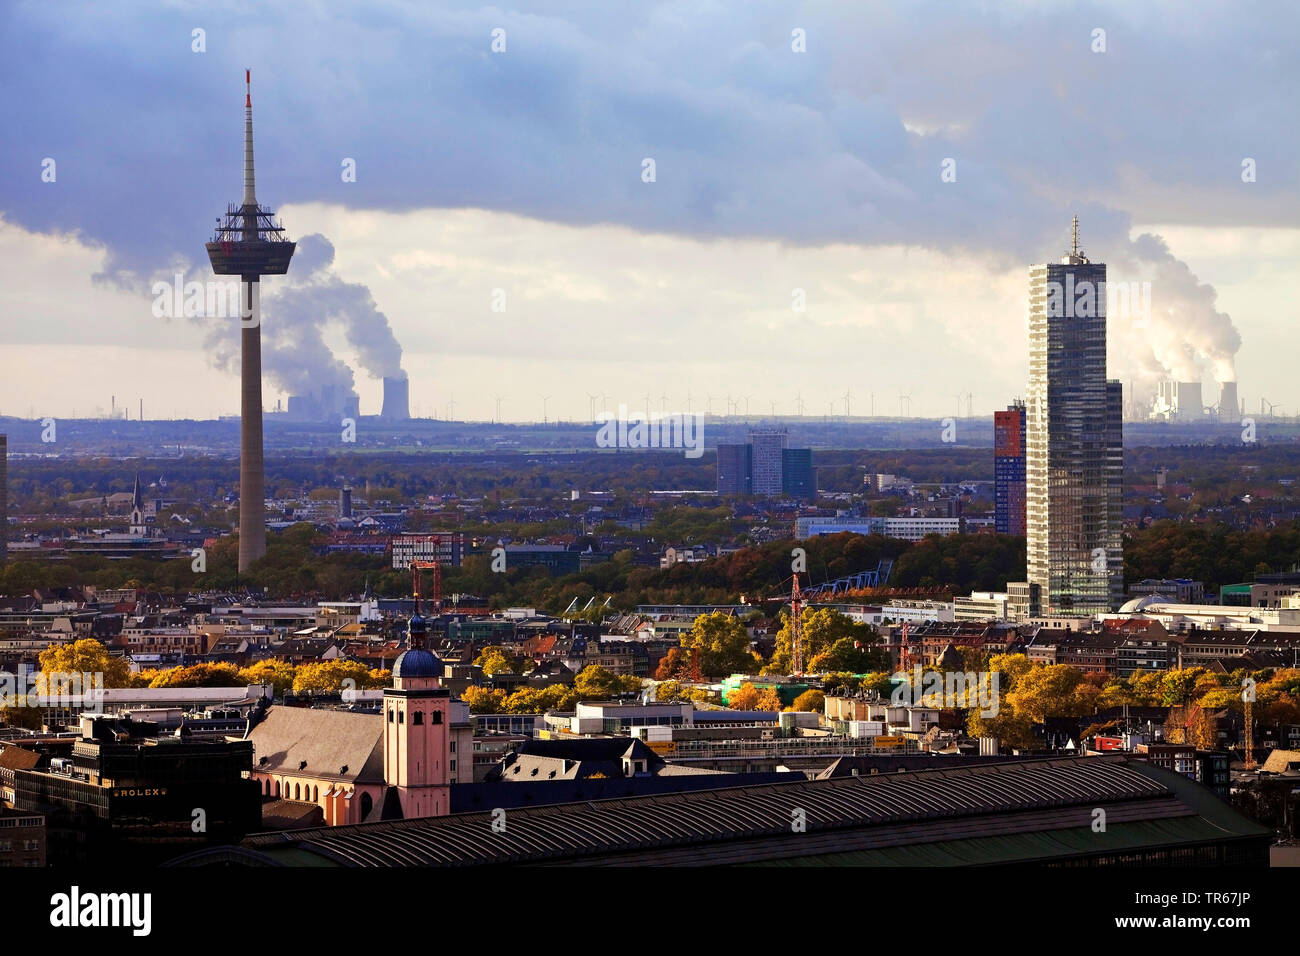 Vue de la ville avec la tour de télévision et Koelnturm, brown coal power stations en arrière-plan, l'Allemagne, en Rhénanie du Nord-Westphalie, Rhineland, Cologne Banque D'Images